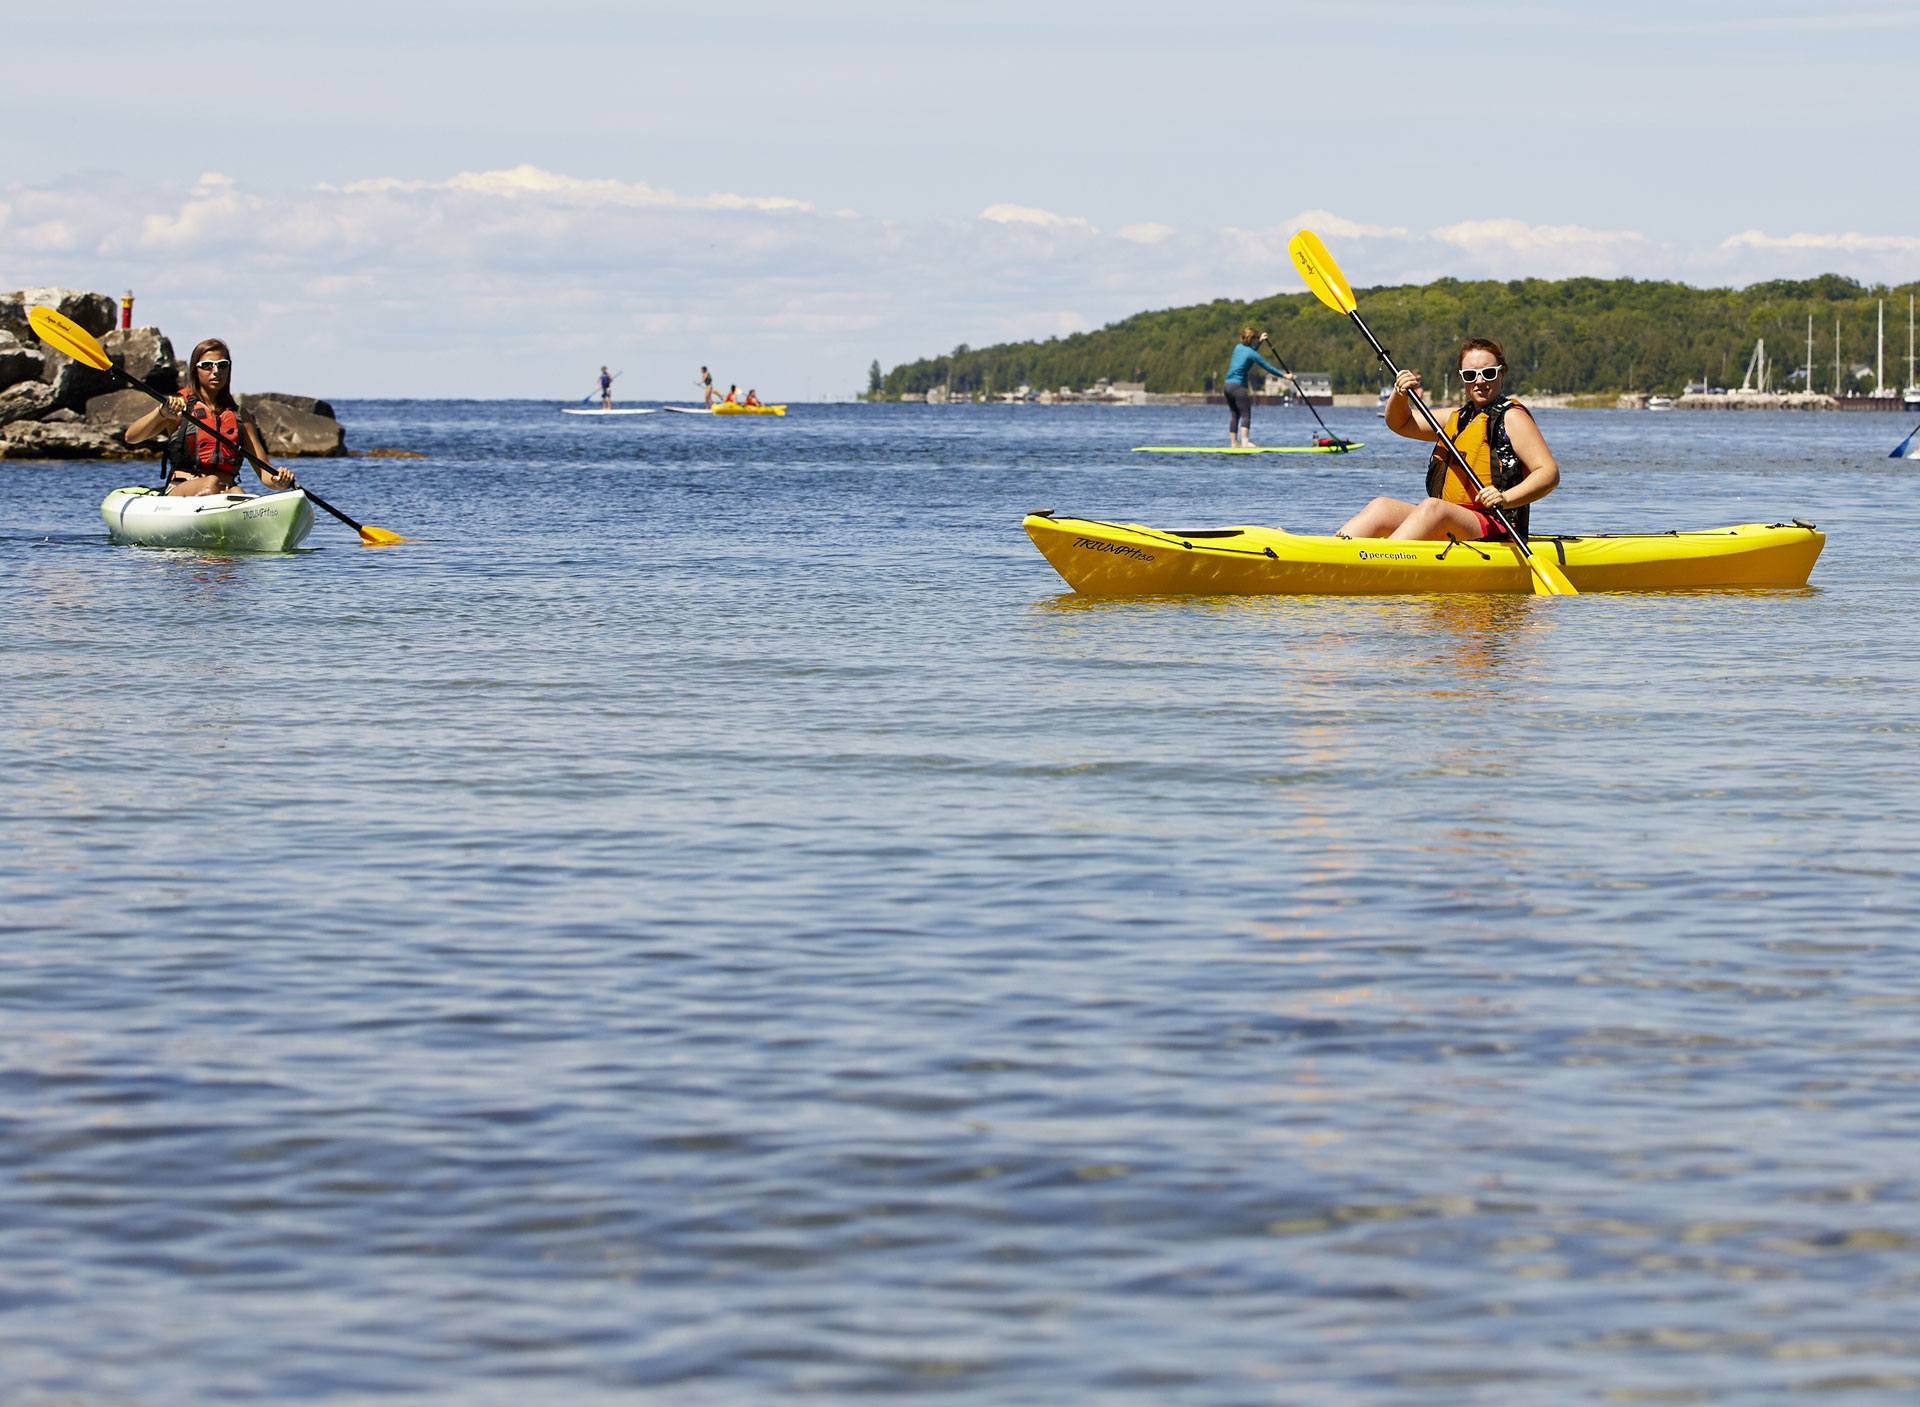 People kayaking on the lake